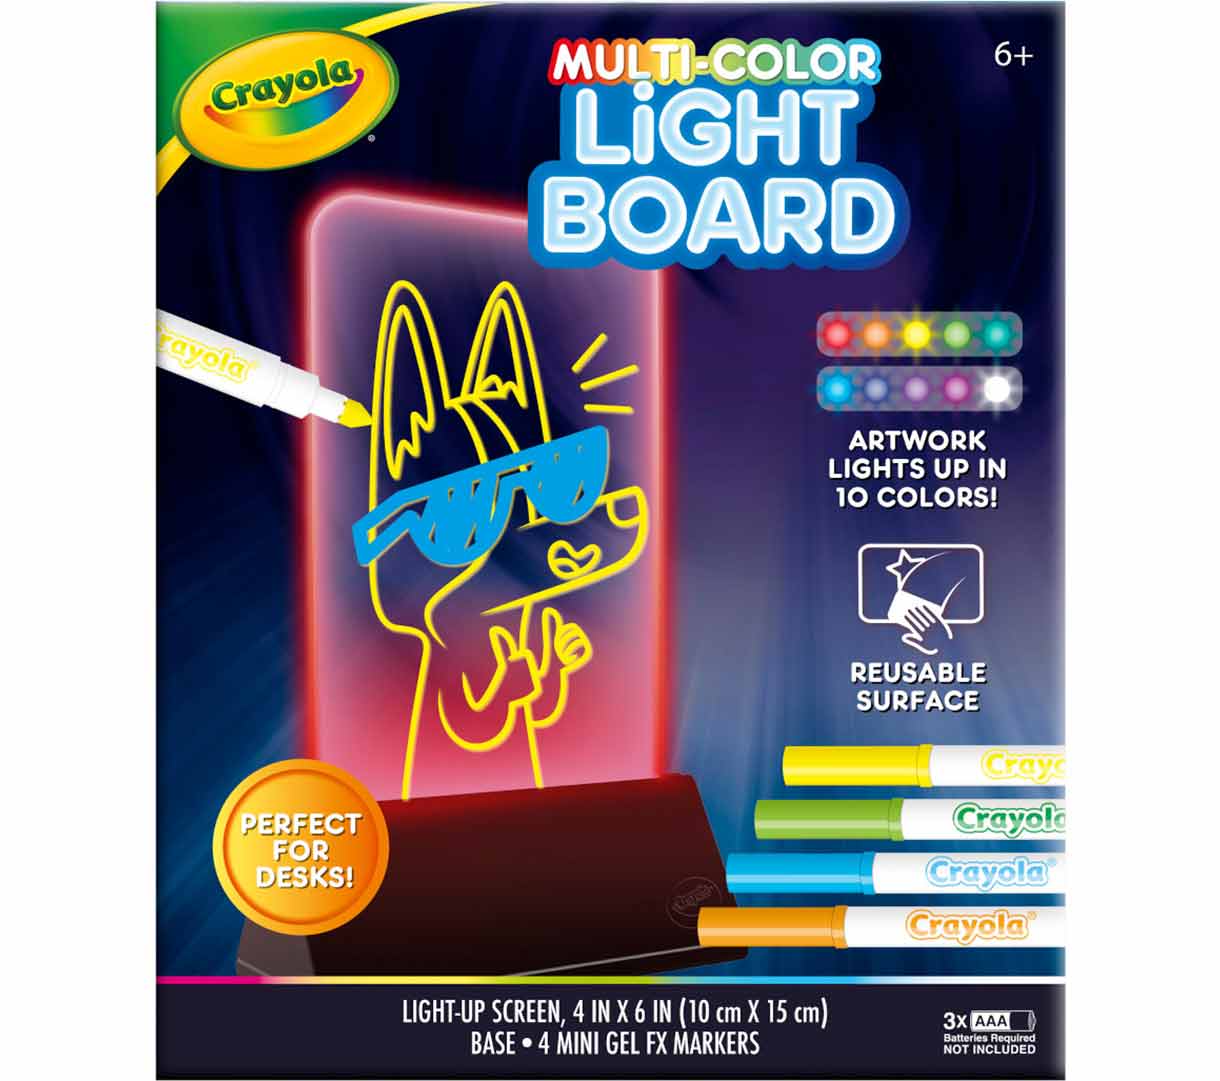 Crayola Multi-Color Light Board Desk Toy, Crayola.com